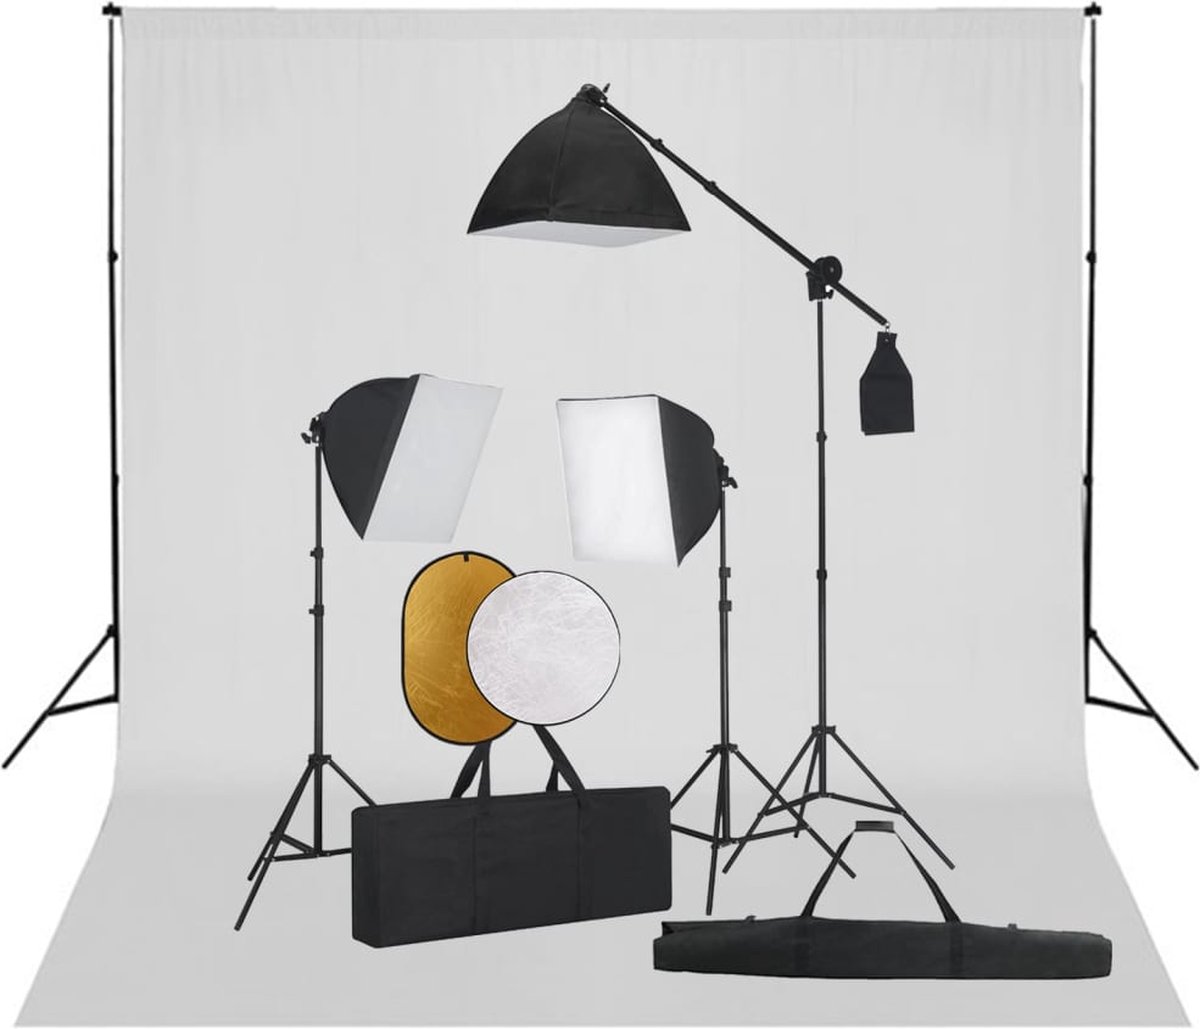 VidaLife Fotostudioset met softboxlampen, achtergrond en reflector